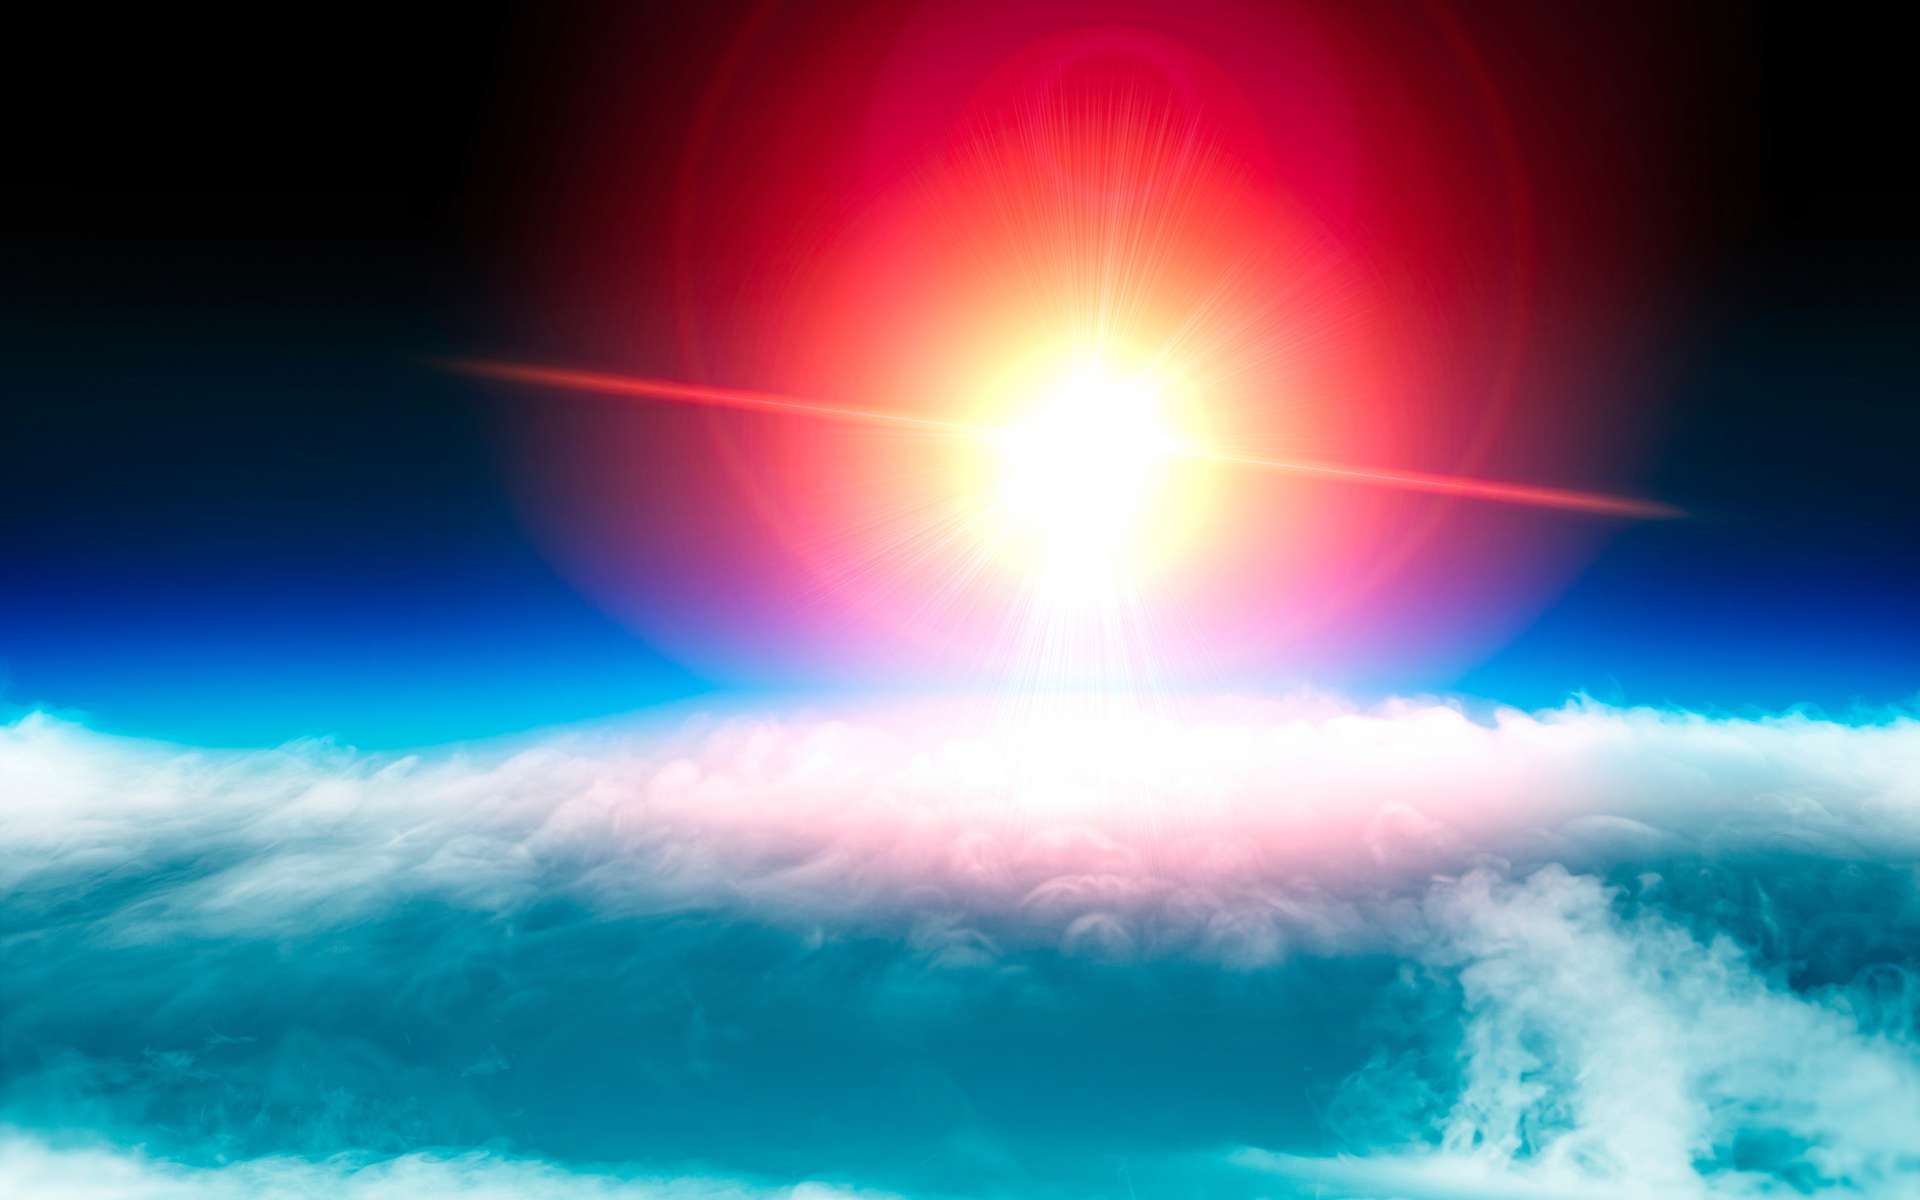 Le trou dans la couche d'ozone sera complètement refermé d'ici 2066